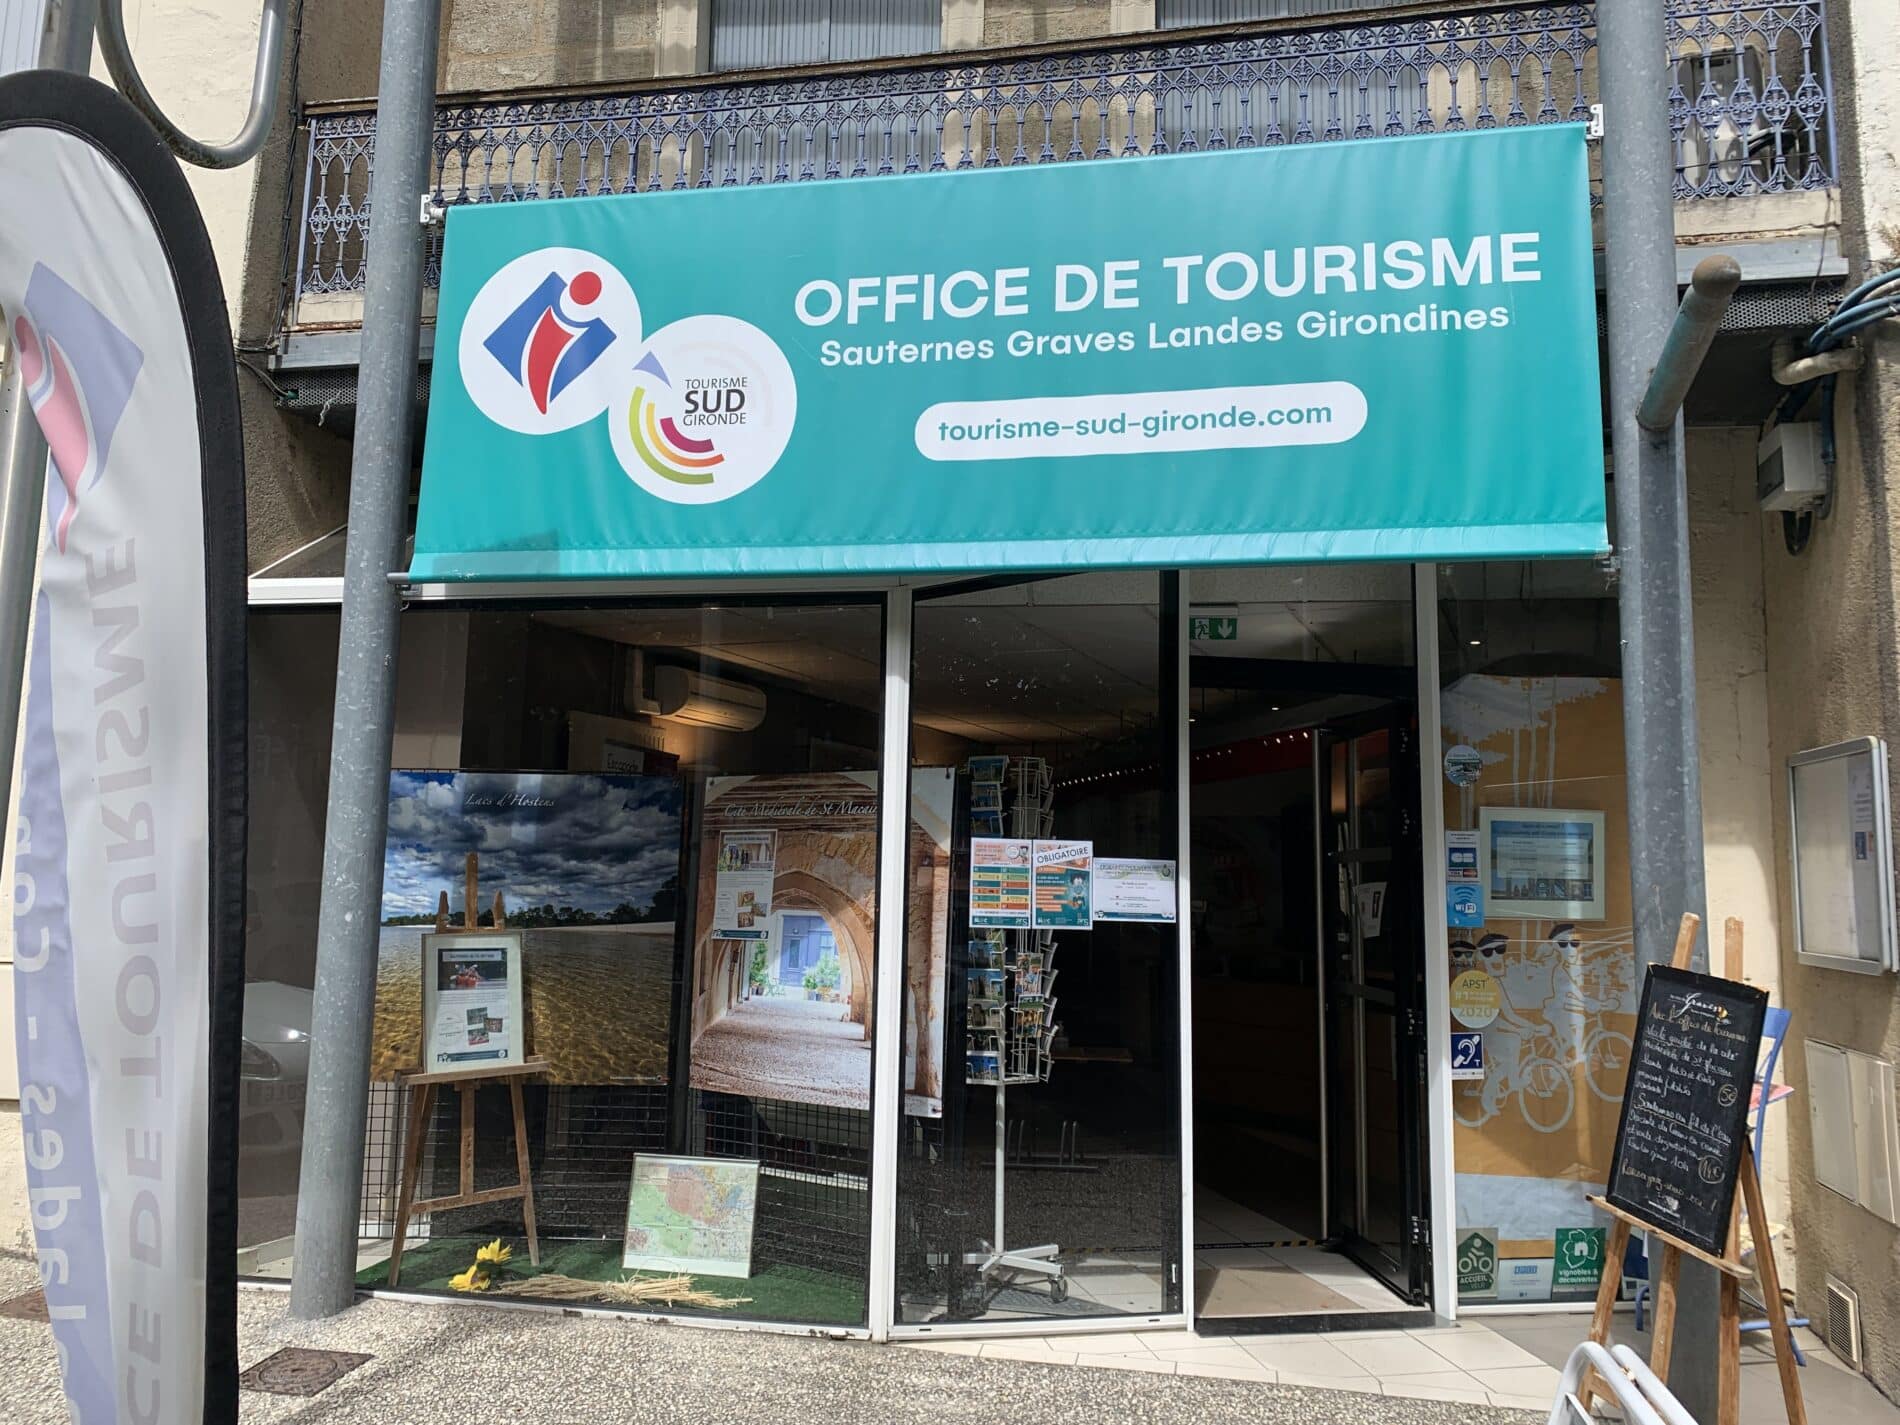 Office de Tourisme Sauternes Graves Landes Girondines - BIT de Langon